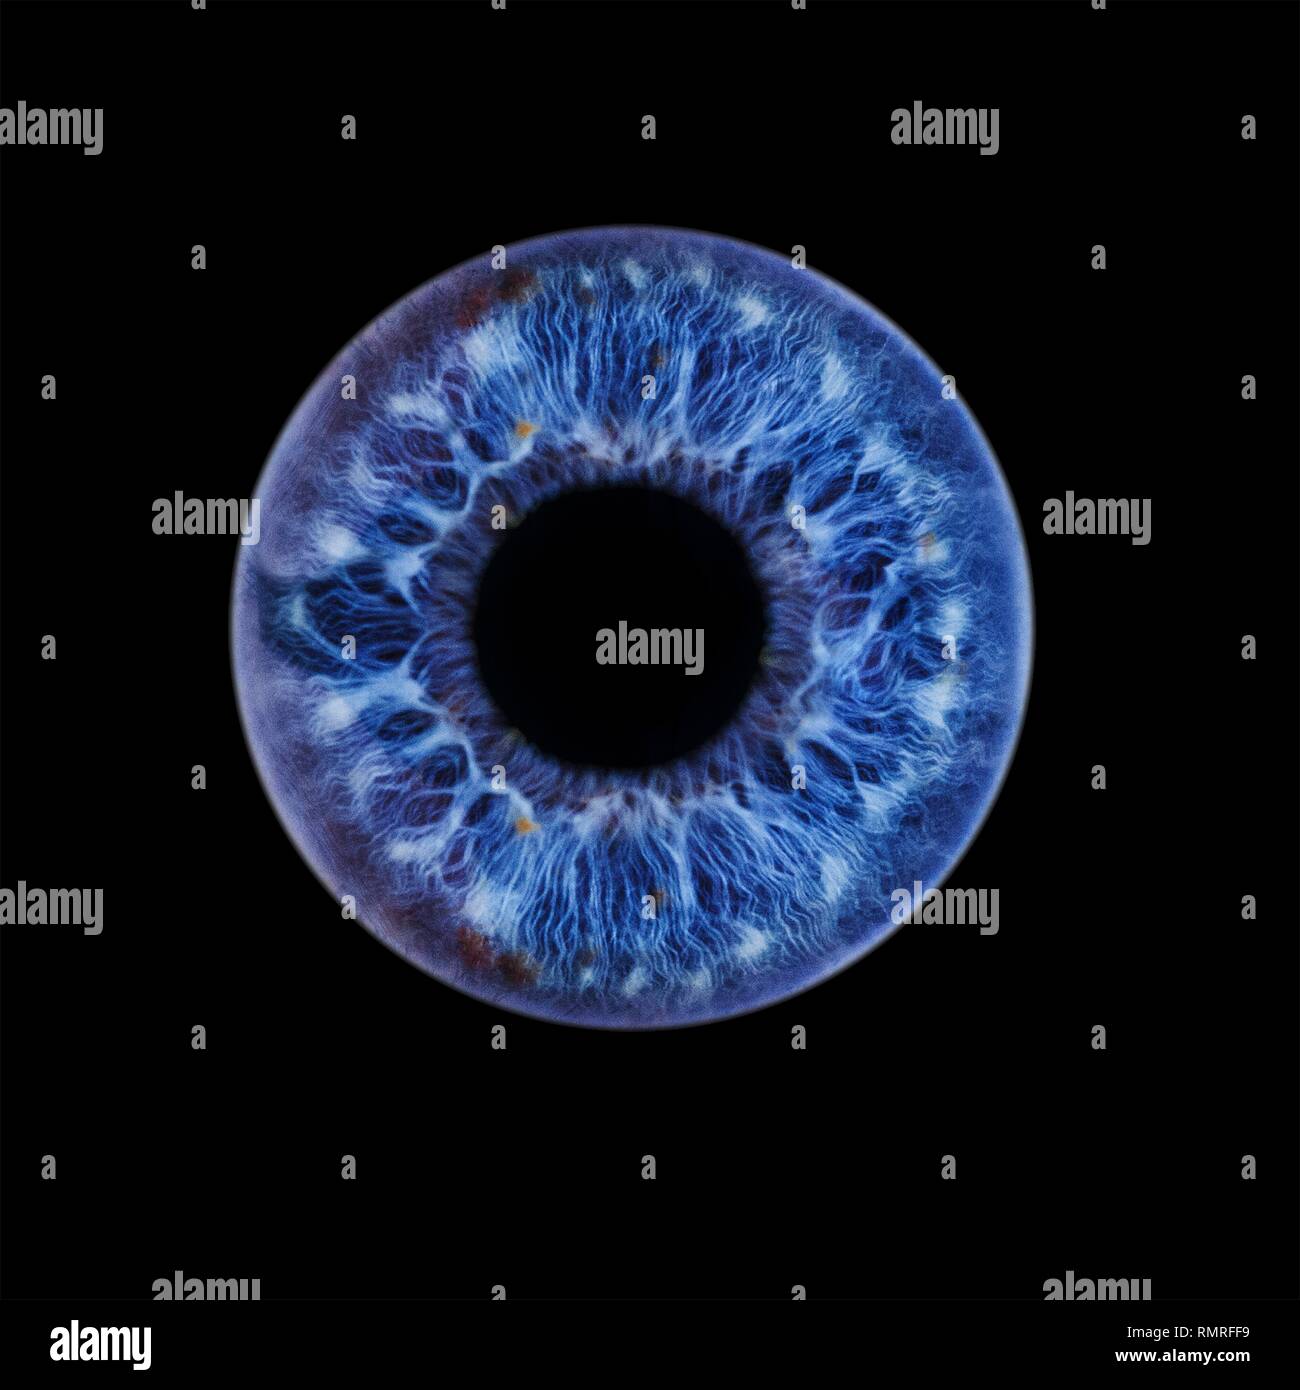 Œil humain montrant close-up of blue iris et pupille. La couleur de l'iris, un anneau musculaire, régule la quantité de lumière qui pénètre dans l'oeil. Banque D'Images